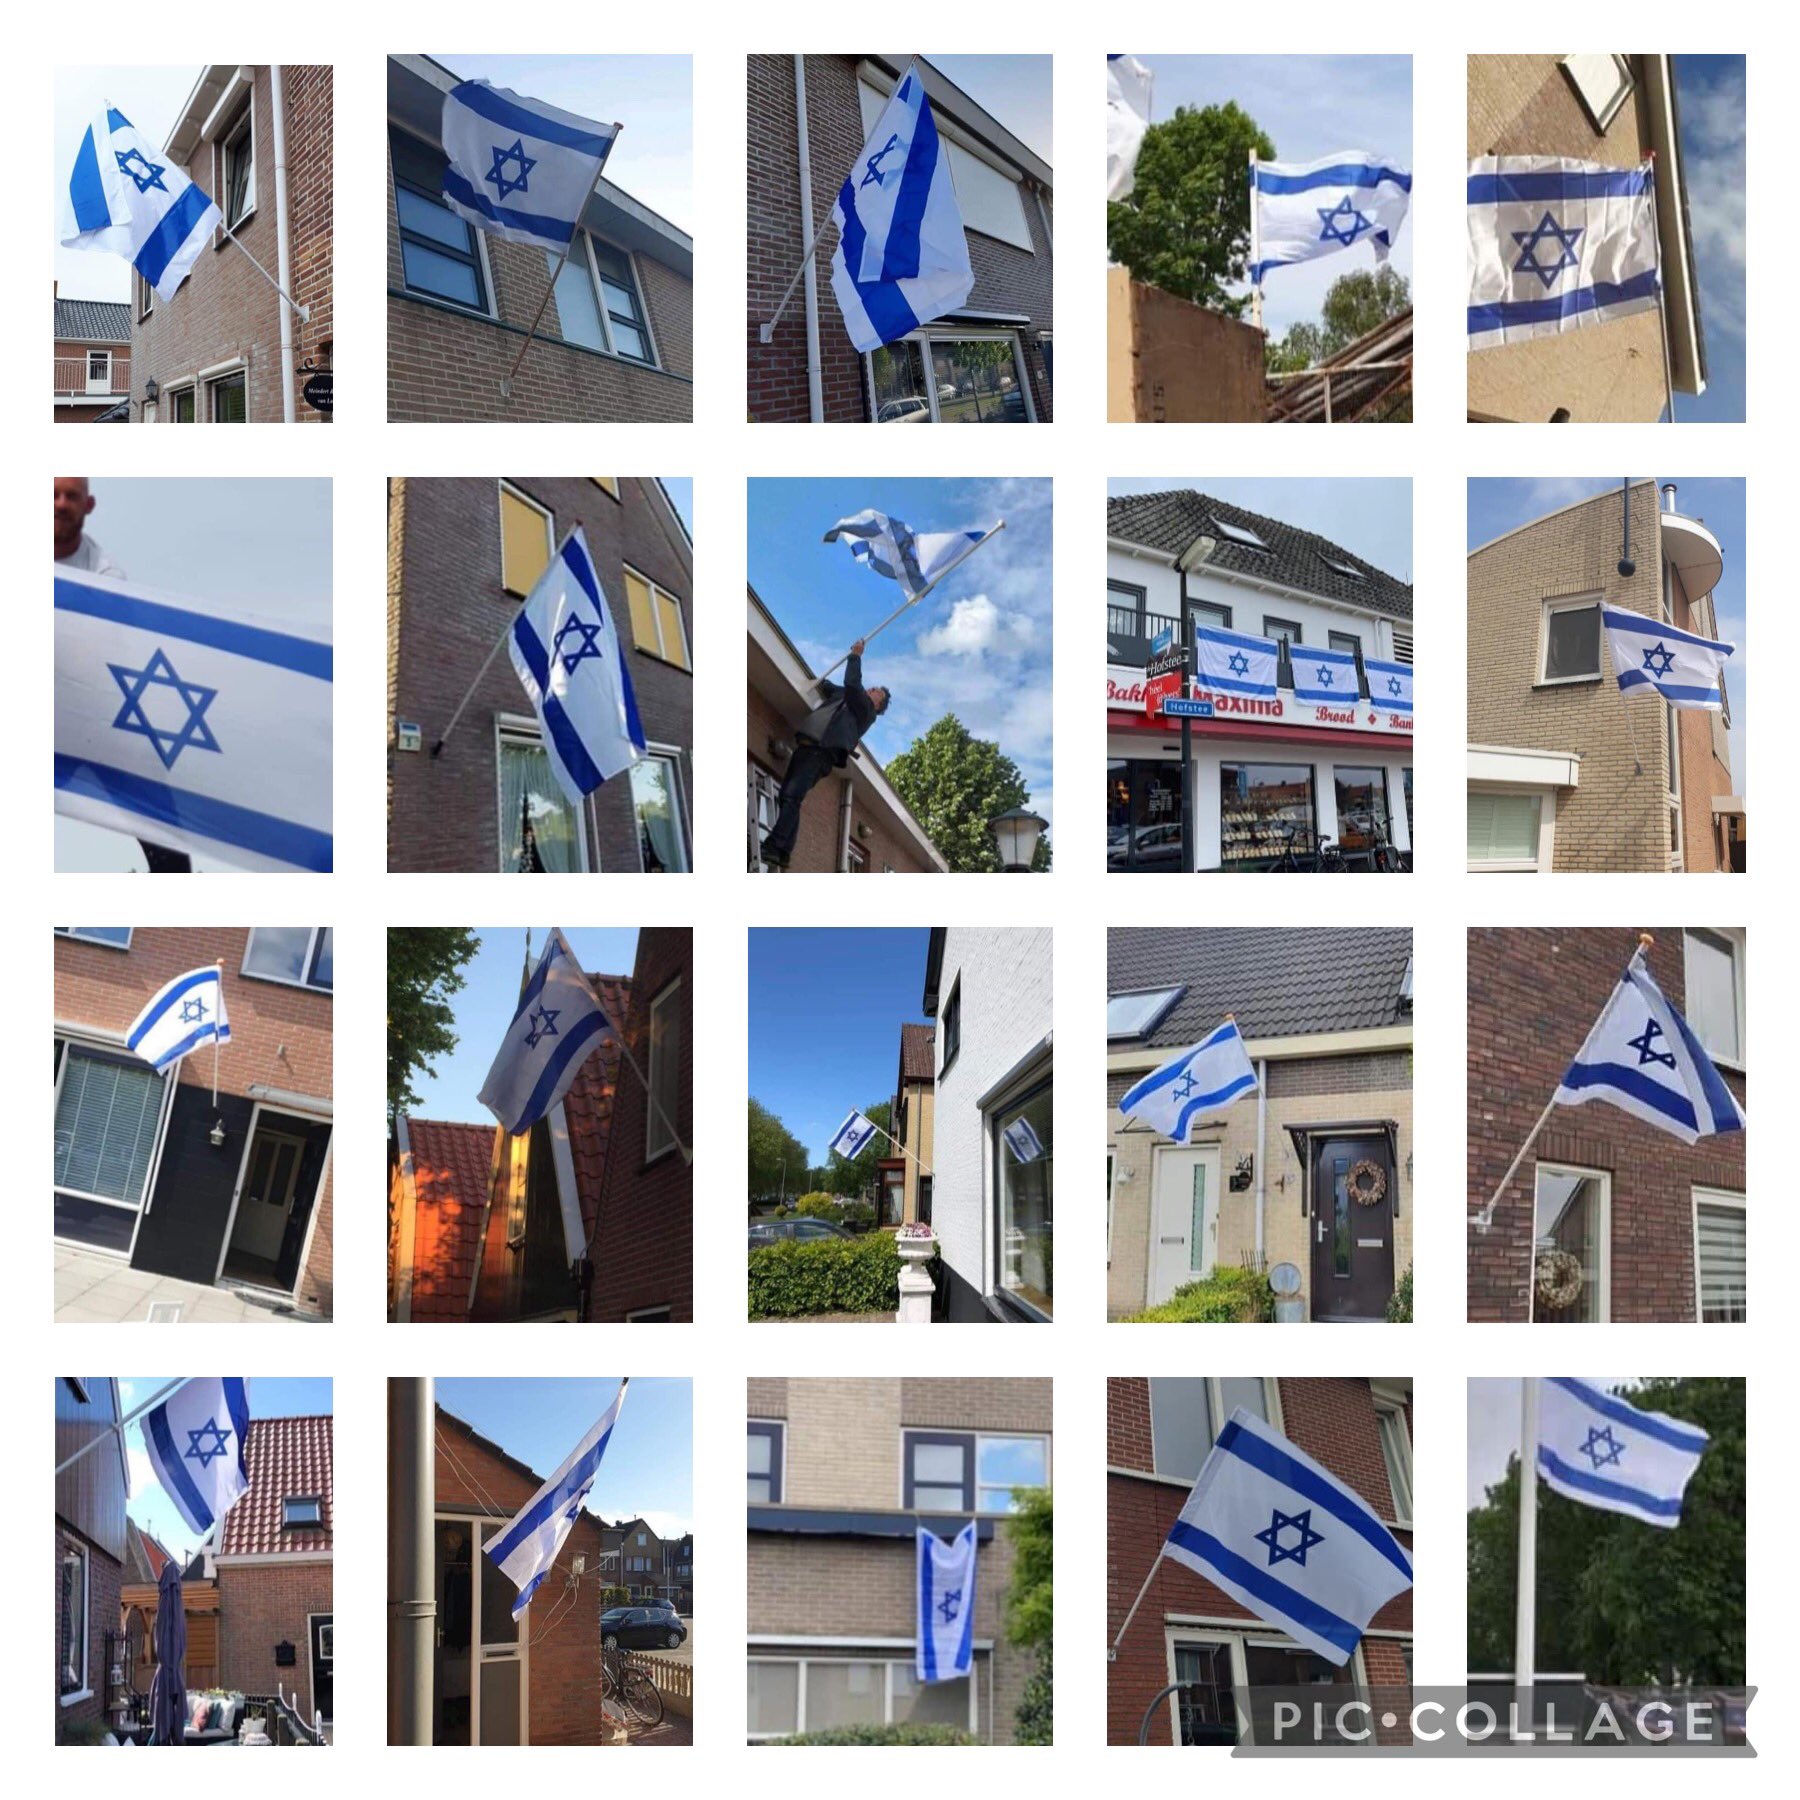 Urk hangt massaal de Israëlische vlag uit